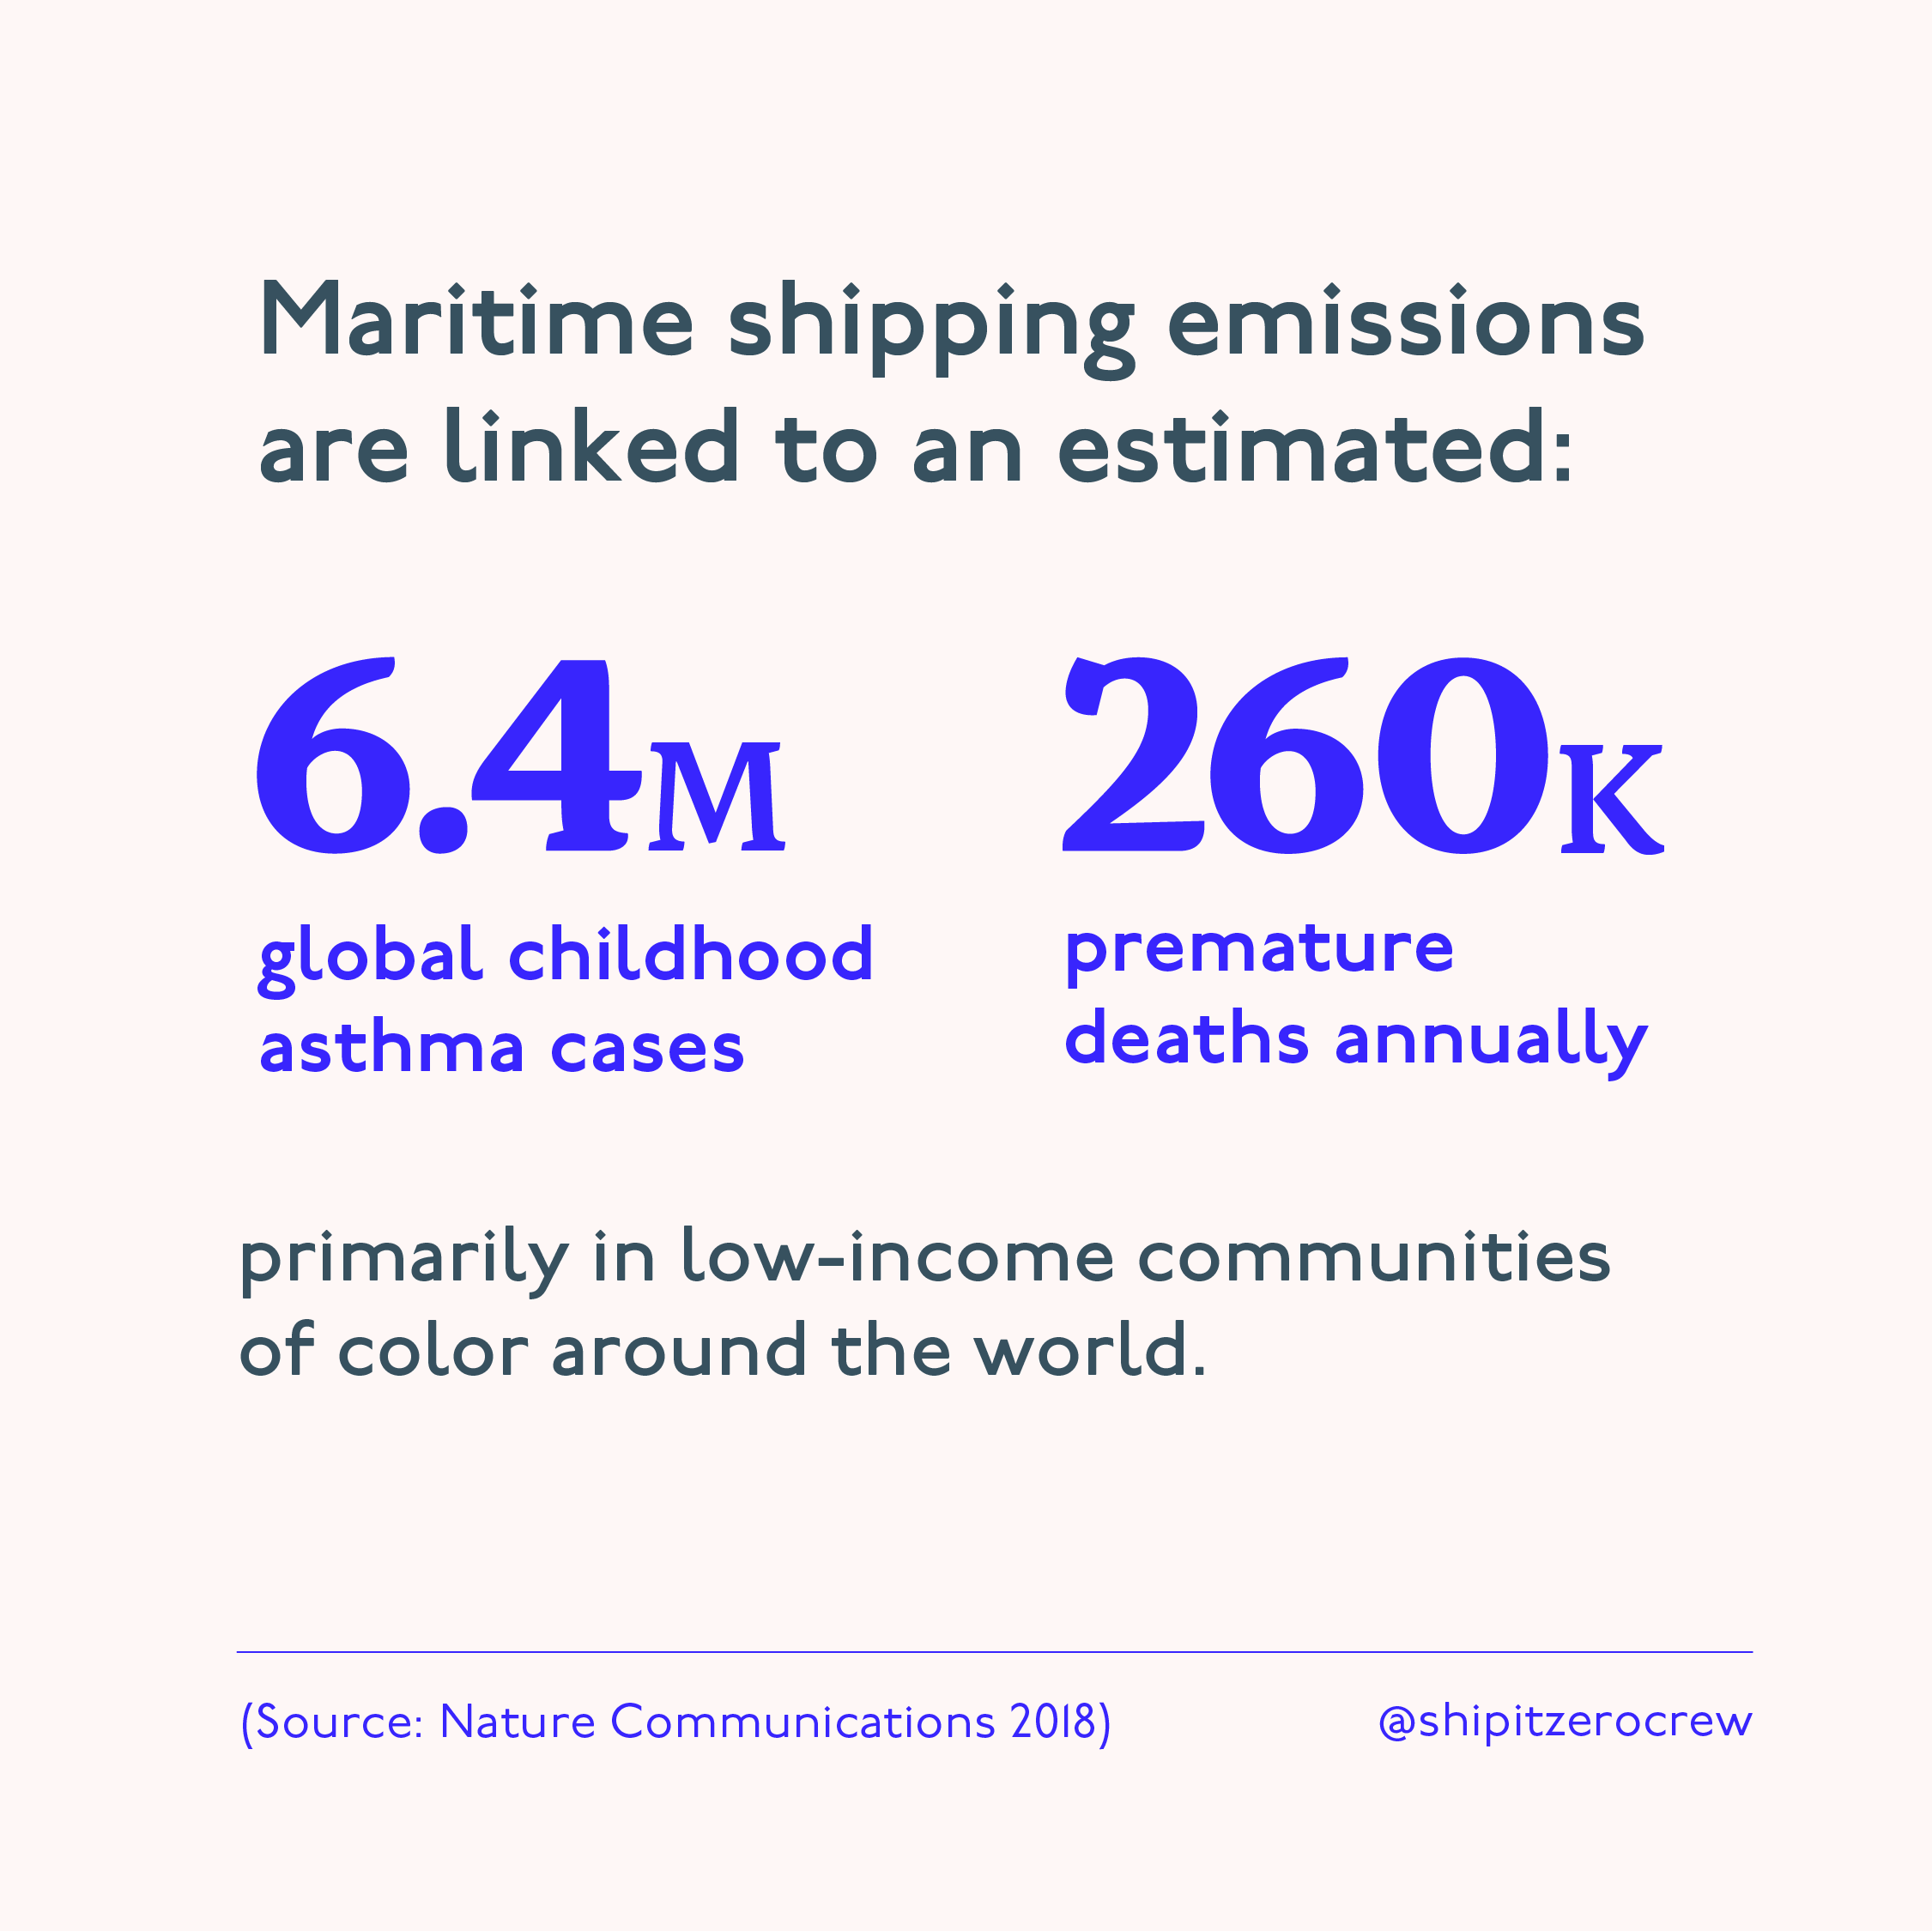 图示分享海运排放与儿童哮喘病例和过早死亡的估计联系